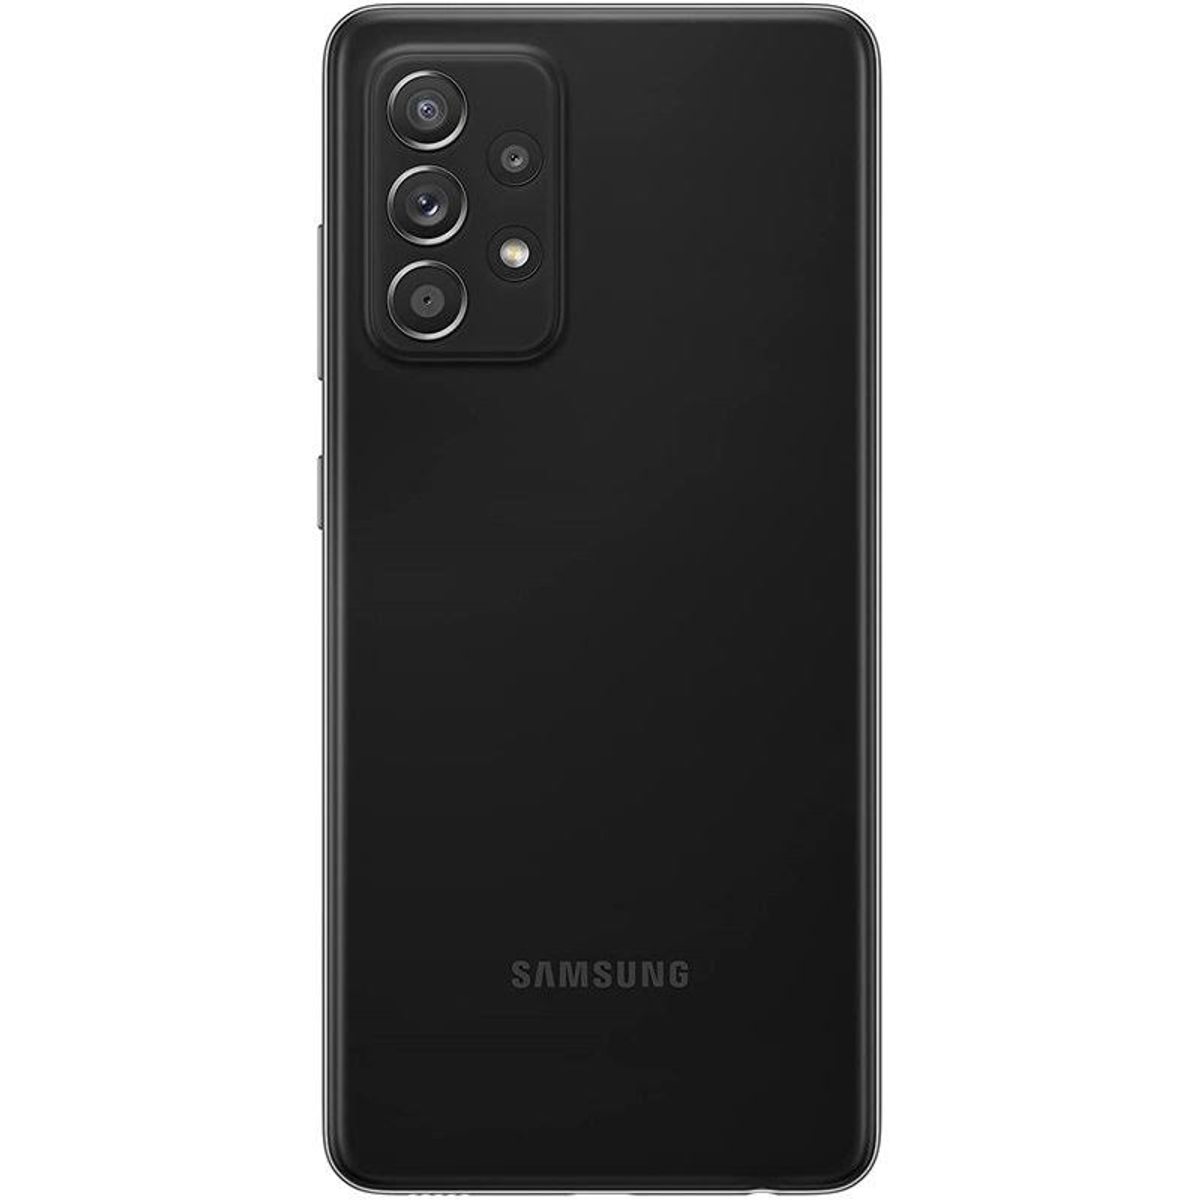 SAMSUNG GALAXY Awesome GB EE 5G Black 128 Dual SIM 128GB BLACK A52S